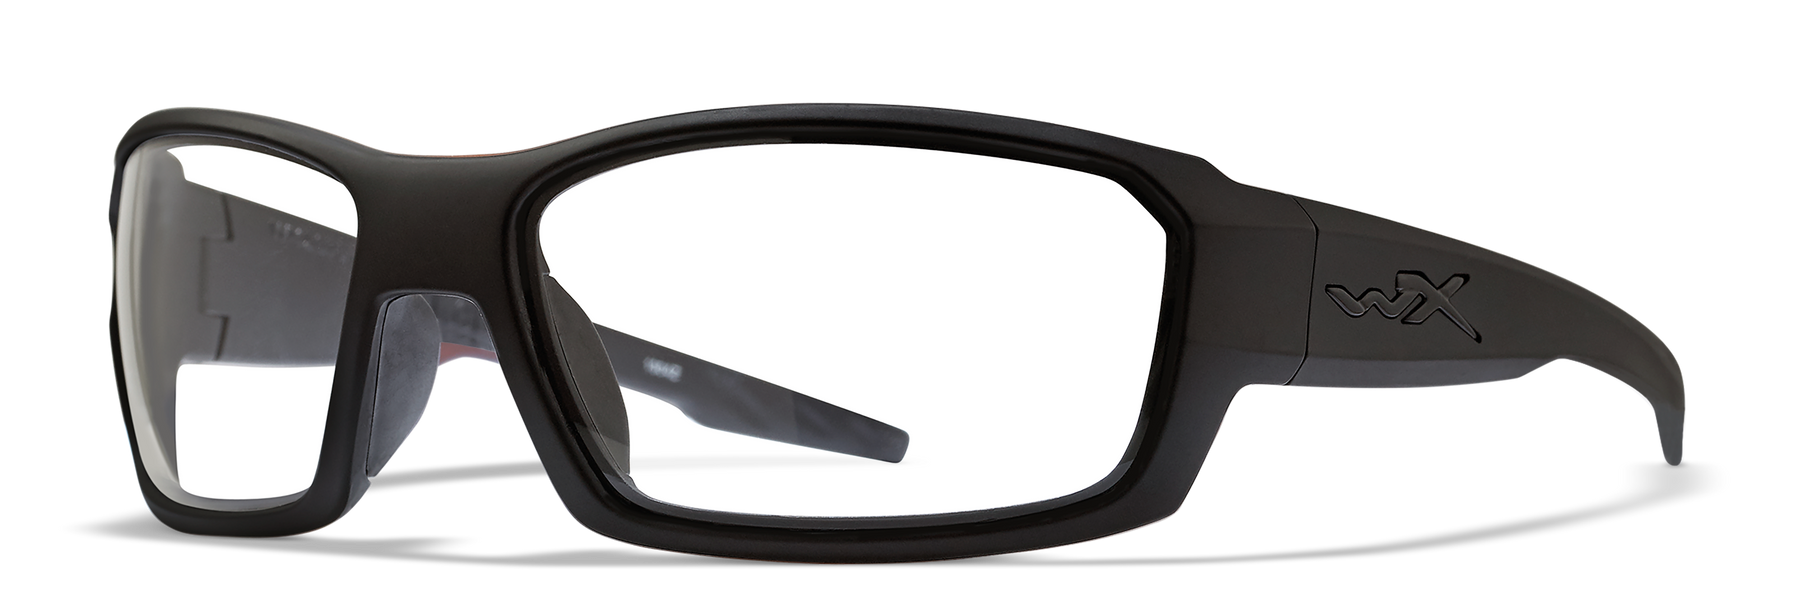 Wiley-X Rebel - Ballistic Eyewear Tactical Sunglasses